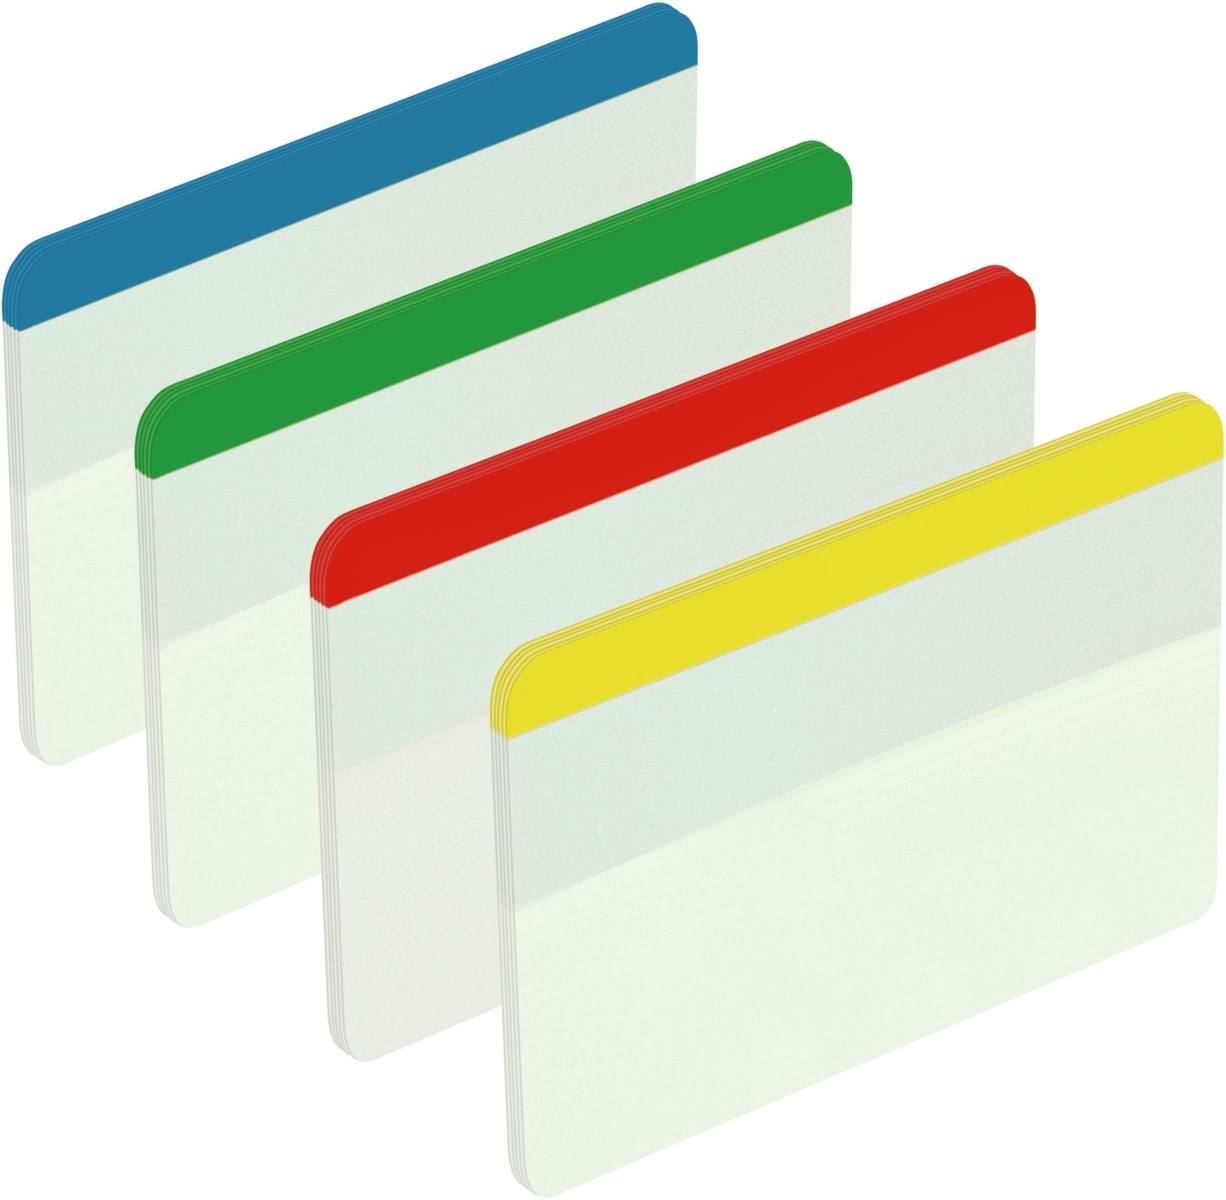 3M Post-it Indice Forte 686-F1EU, 50,8 mm x 38 mm, blu, giallo, verde, rosso, 4 x 6 strisce adesive